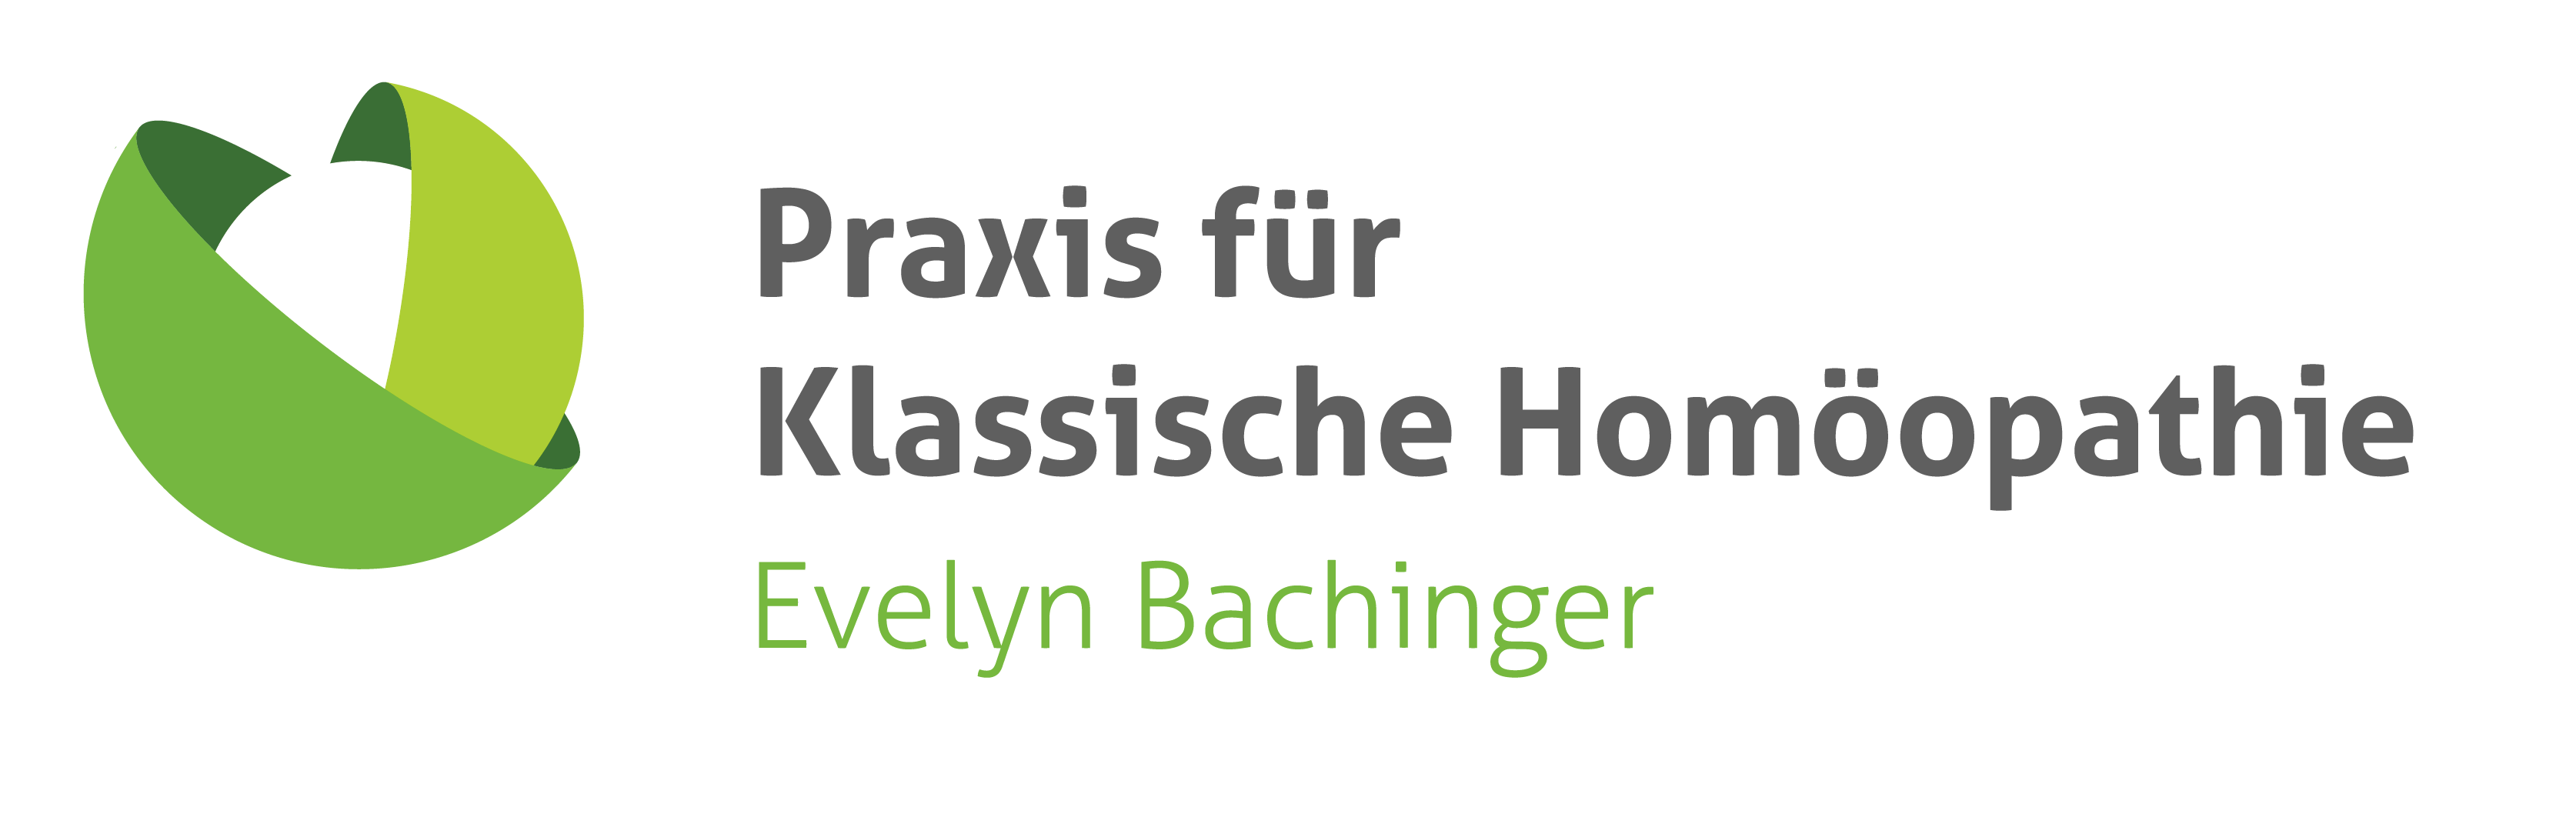 Evelyn Bachinger – Praxis für Klassische Homöopathie